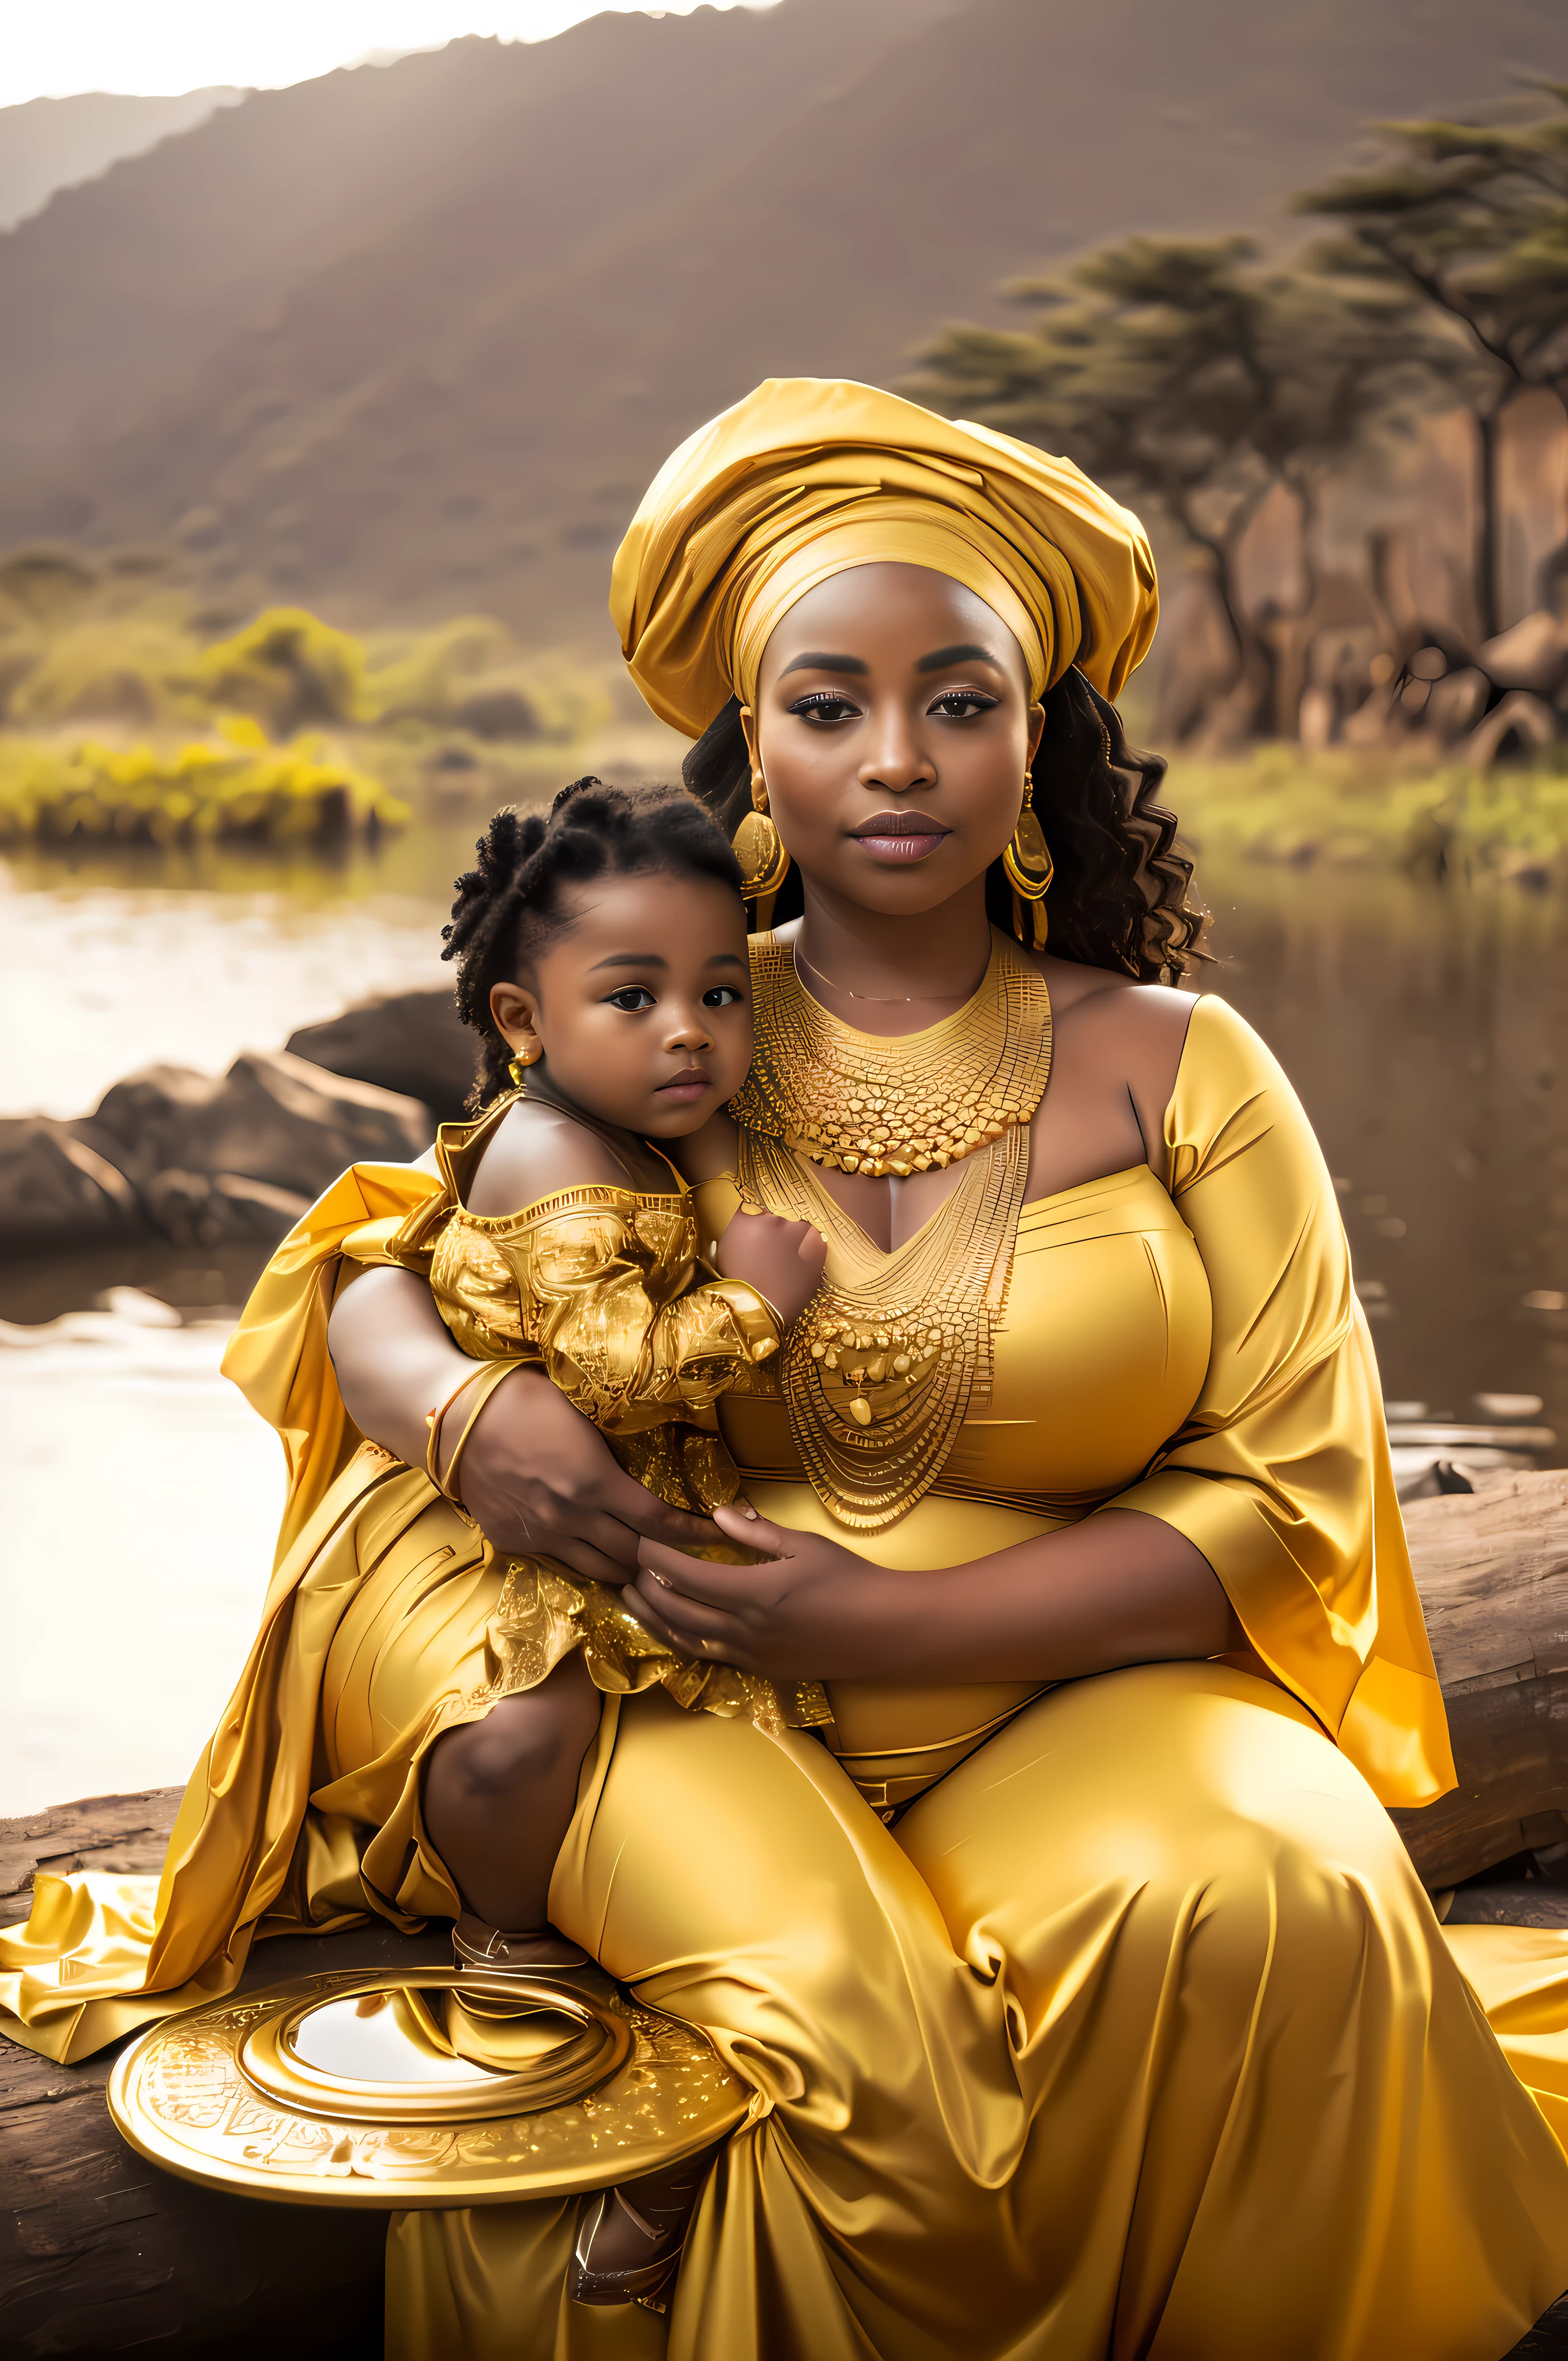 금색 드레스를 입은 임산부가 아기를 안고 있다, Princesa 아프리카 사람a deslumbrante, Princesa negra 아프리카 사람a, Rainha 아프리카 사람a, 아프리카 공주, 황금색 톤, 우마 벨라의 사진, 골드 톤이 자연스럽게 표현됩니다., mulher 아프리카 사람a, 4K 산모 사진, 아름다운 여인, 전통미, 아프리카 사람, 금으로 뒤덮인 sedoso, Joias 아프리카 사람as intrincadas, 황금색, 황금빛 아우라, 금으로 뒤덮인